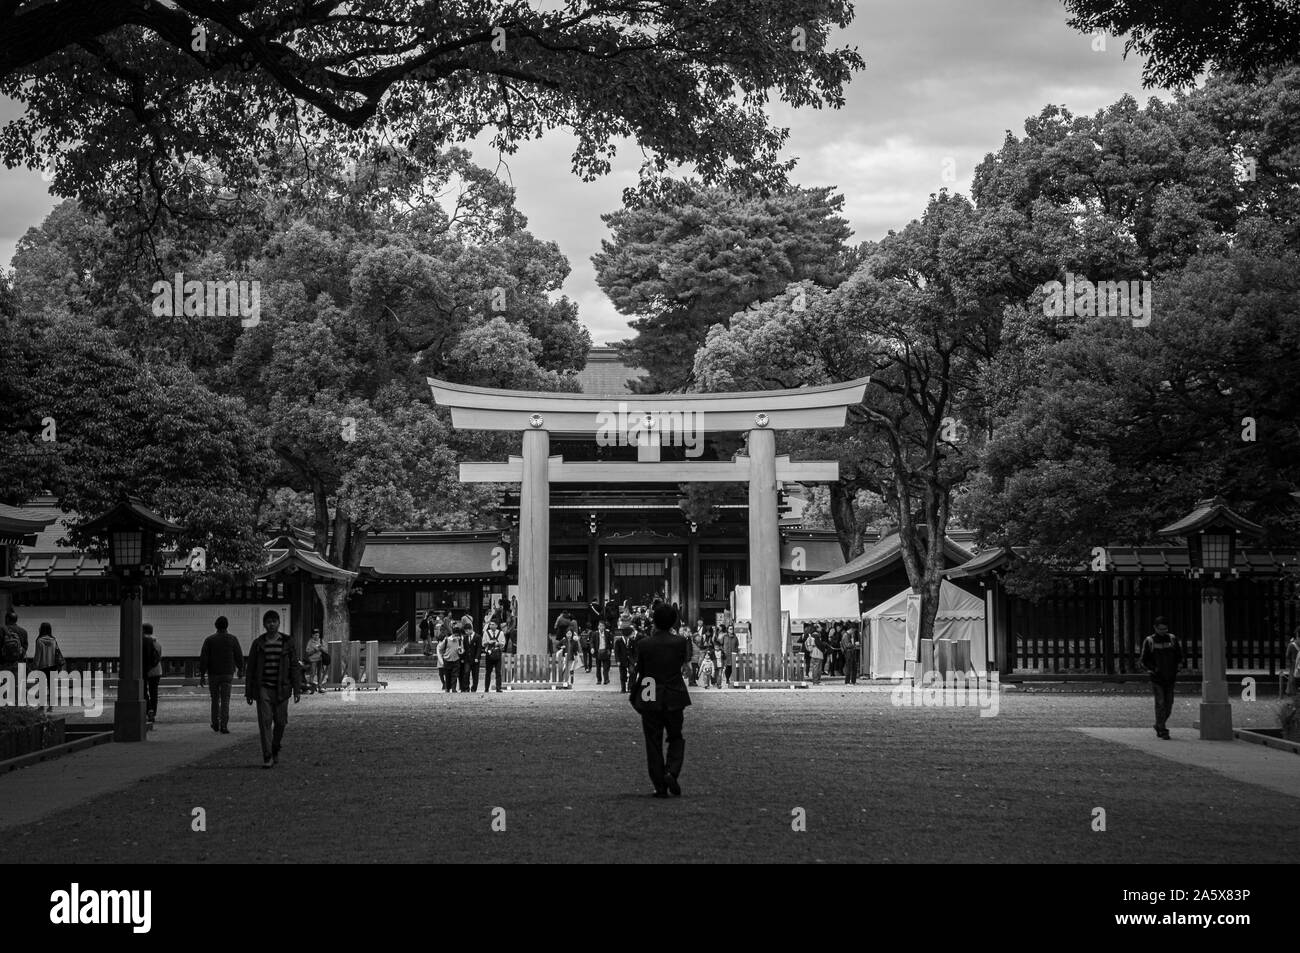 Meiji Jingu Storica porta di legno torii sotto grandi alberi - il più importante santuario e città lo spazio verde del Giappone città capitale. Bianco e nero imag Foto Stock